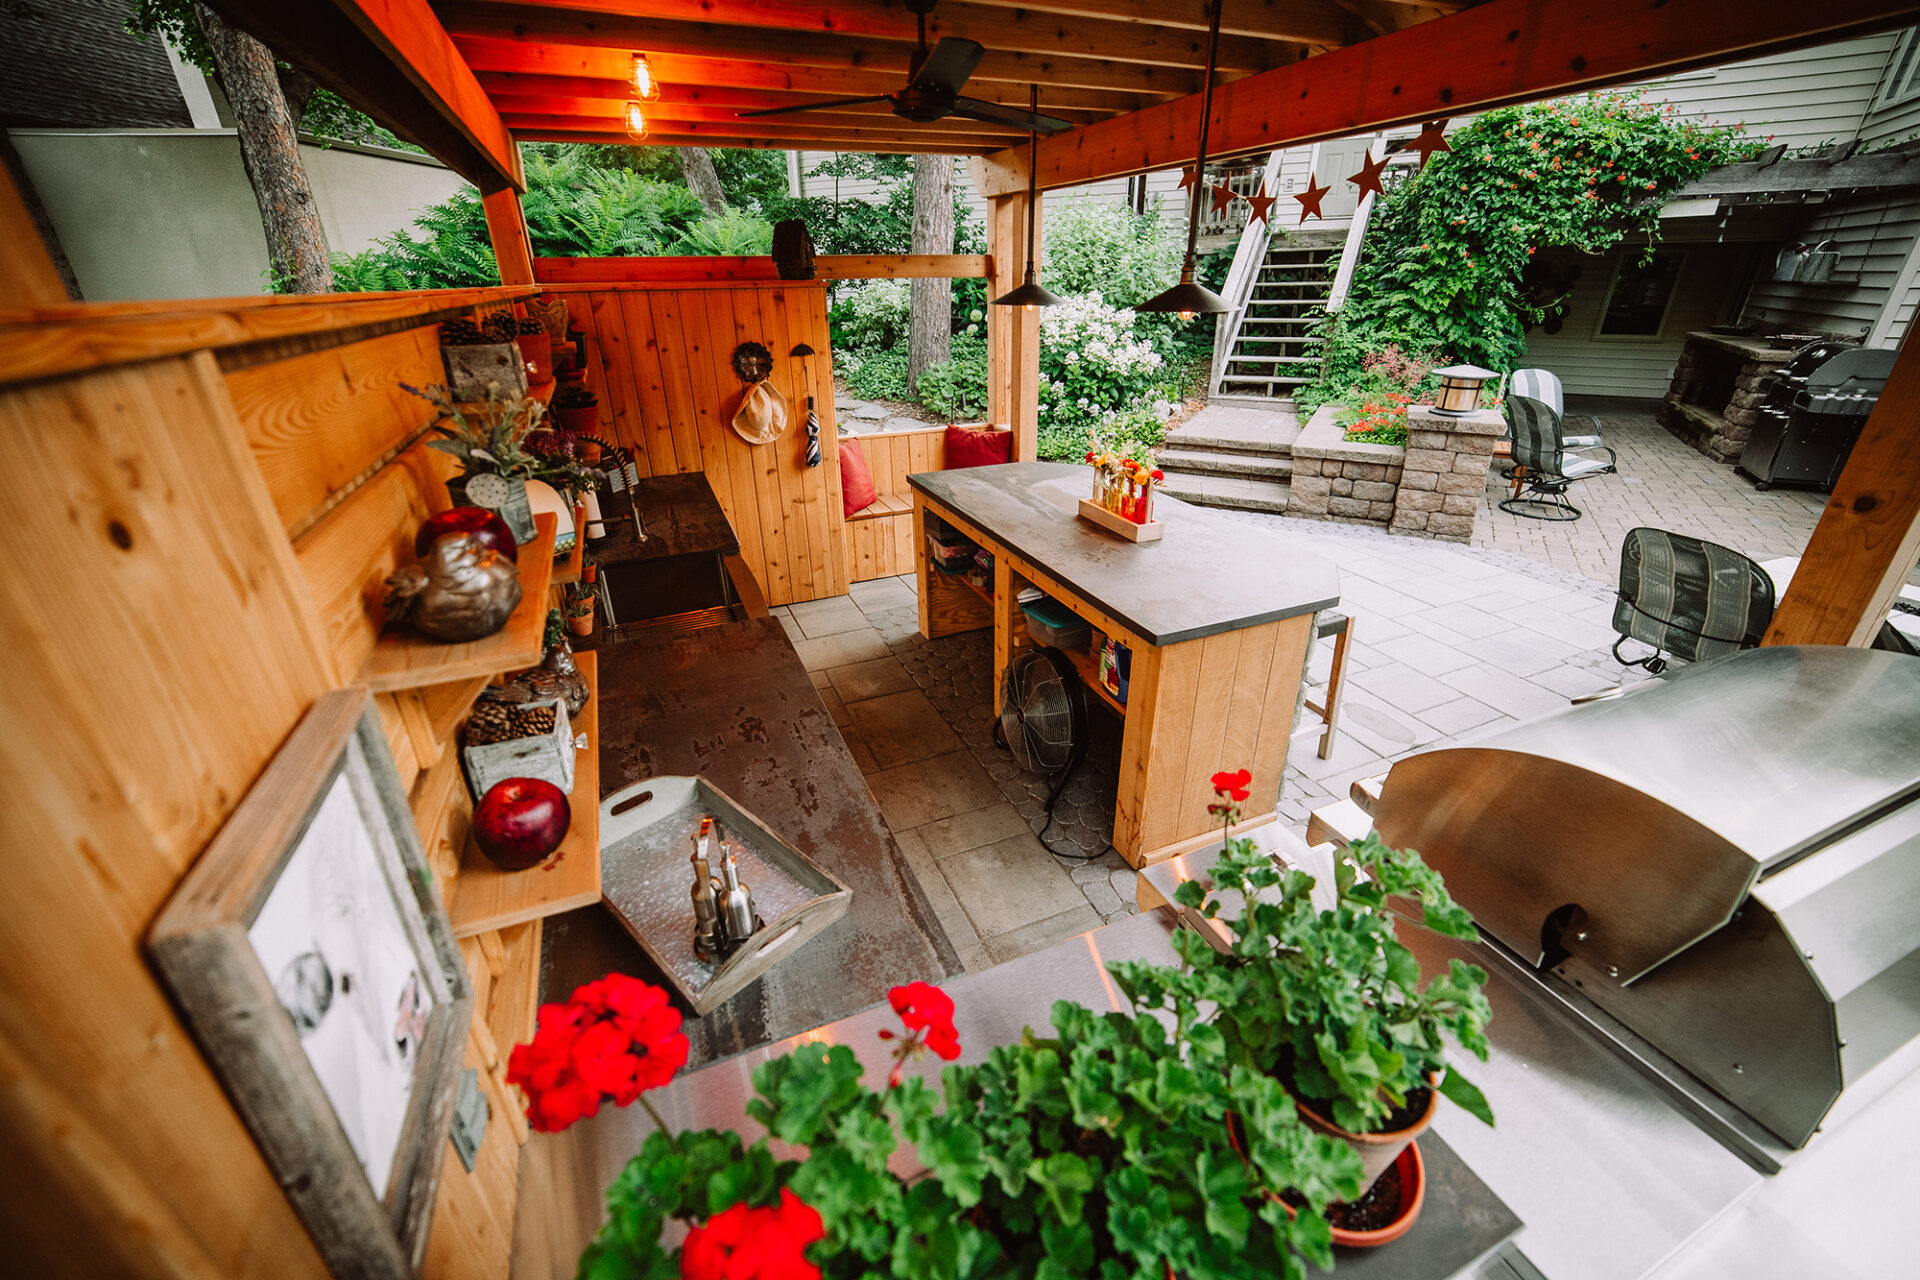 backyard garden and kitchen in South Dakota